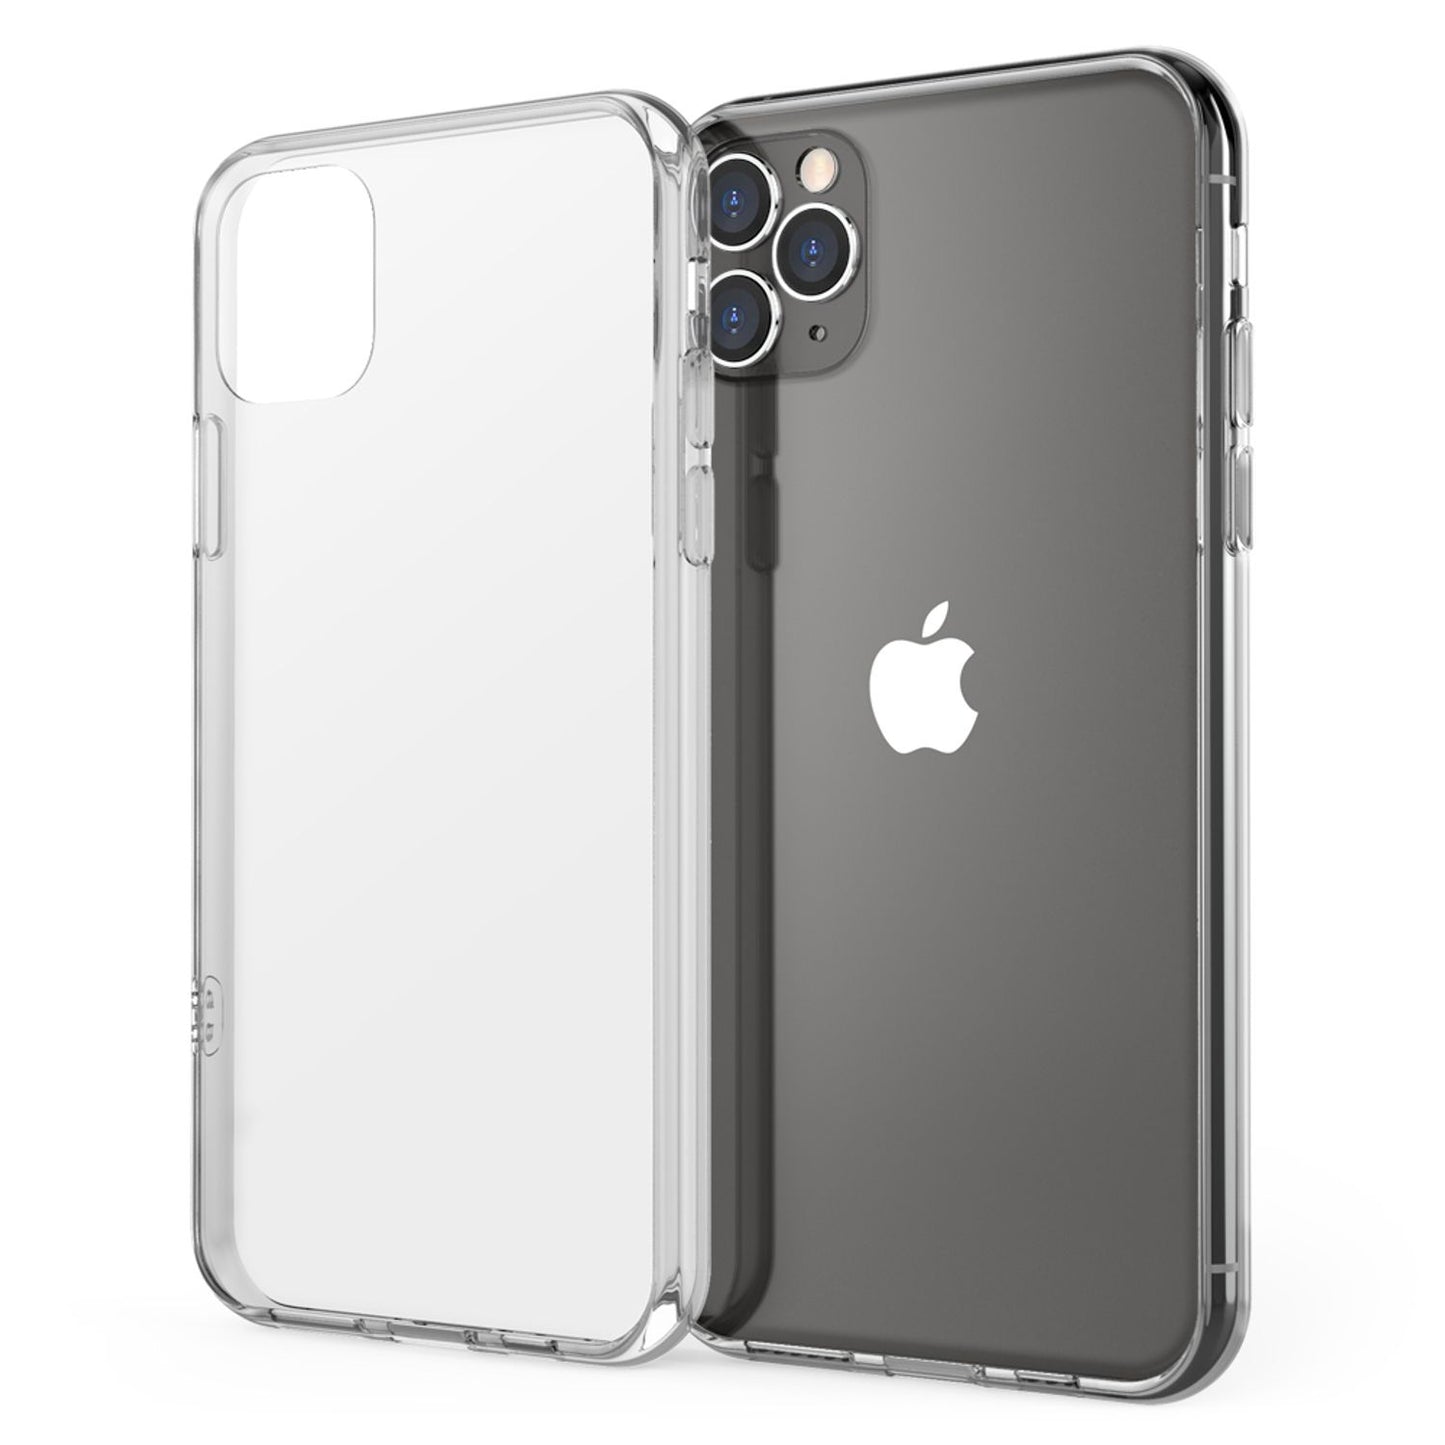 NALIA Hartglas Handy Hülle für iPhone 11 Pro Max, Durchsichtiges Hardcase Cover